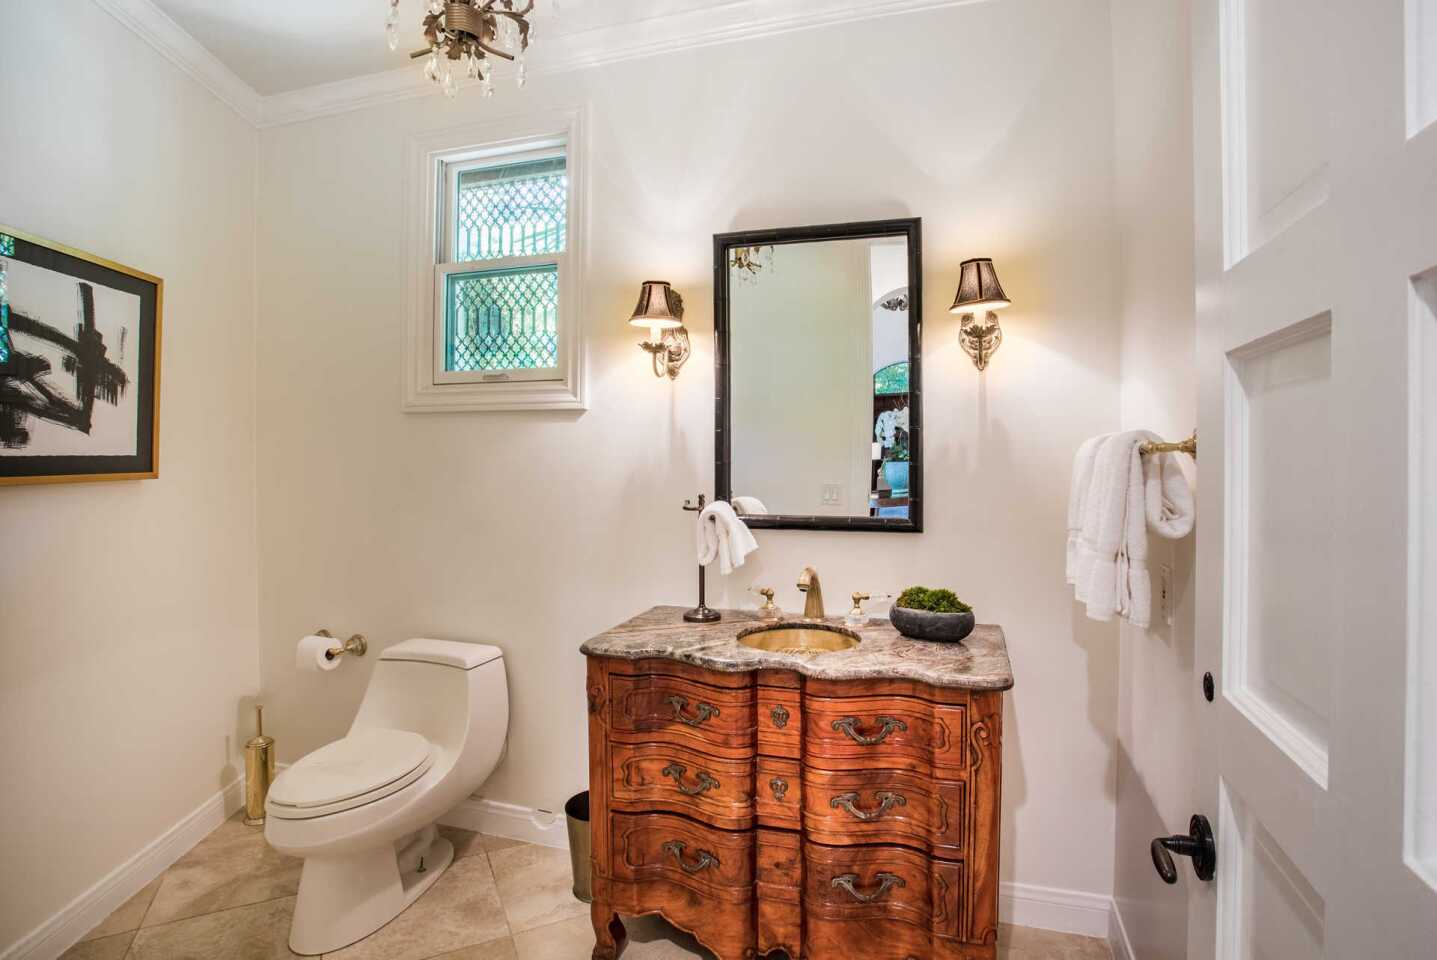 Chris Pratt and Anna Faris' marital home: a bathroom